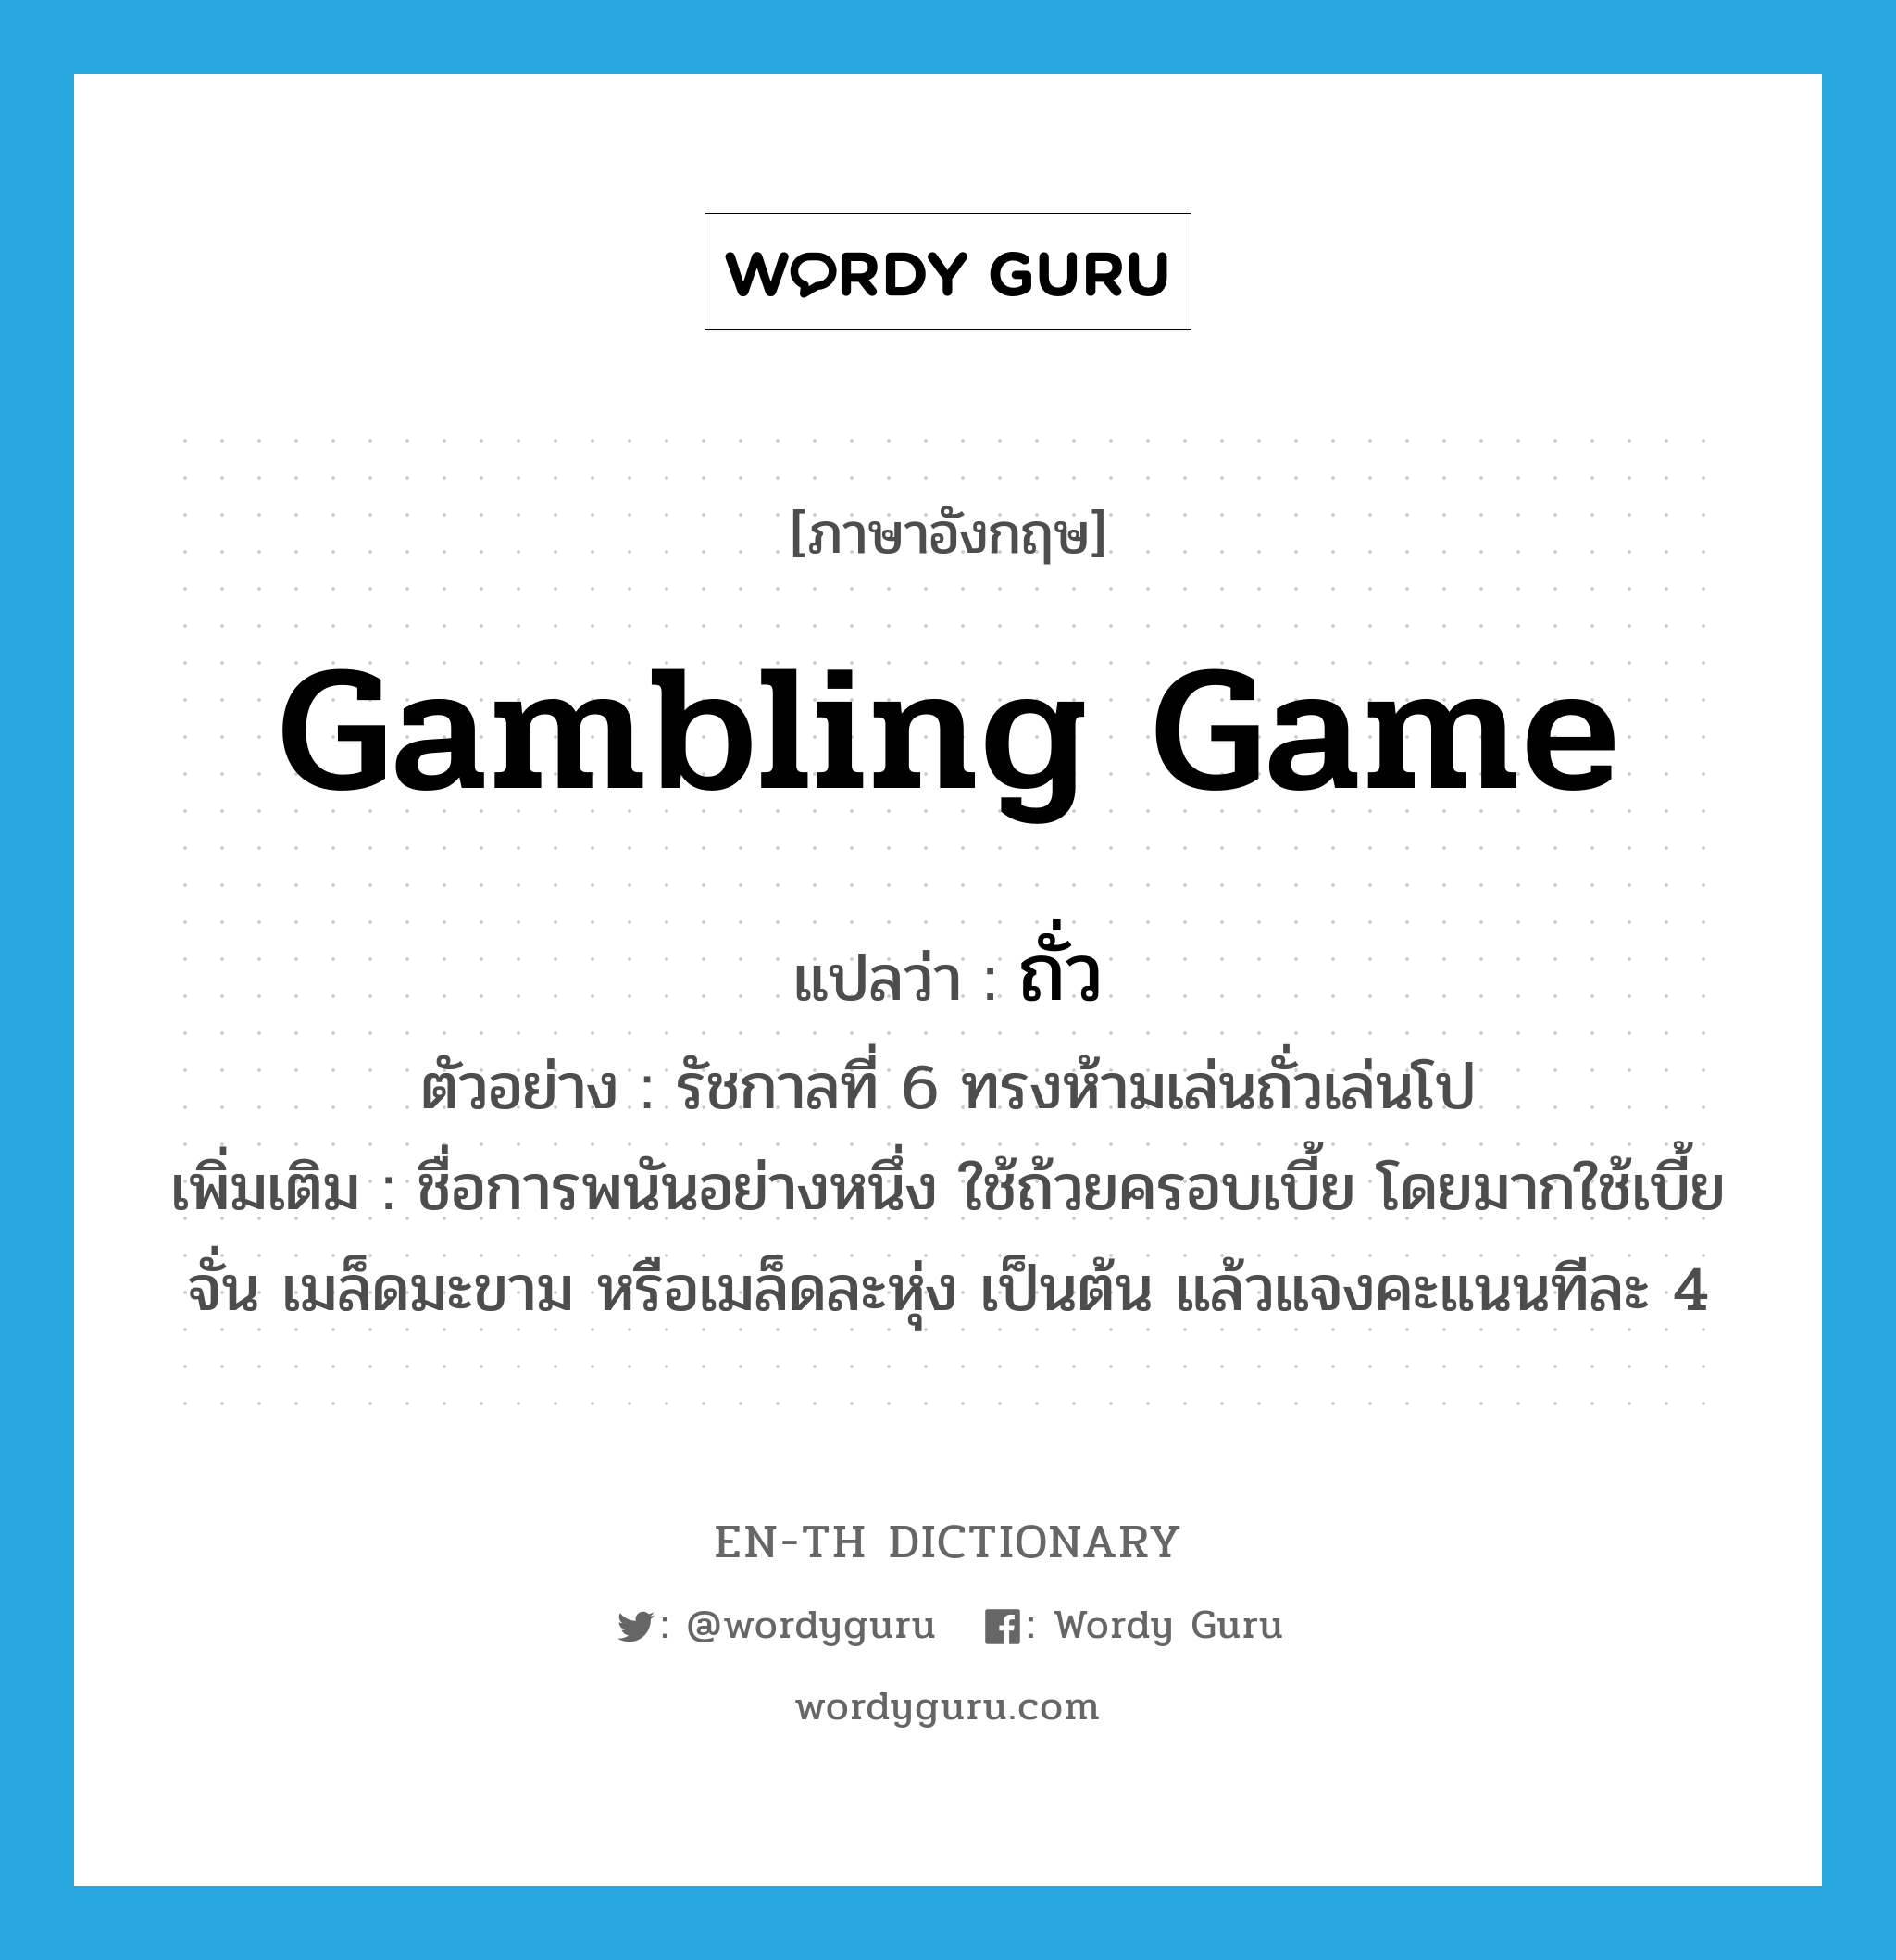 ถั่ว ภาษาอังกฤษ?, คำศัพท์ภาษาอังกฤษ ถั่ว แปลว่า gambling game ประเภท N ตัวอย่าง รัชกาลที่ 6 ทรงห้ามเล่นถั่วเล่นโป เพิ่มเติม ชื่อการพนันอย่างหนึ่ง ใช้ถ้วยครอบเบี้ย โดยมากใช้เบี้ยจั่น เมล็ดมะขาม หรือเมล็ดละหุ่ง เป็นต้น แล้วแจงคะแนนทีละ 4 หมวด N